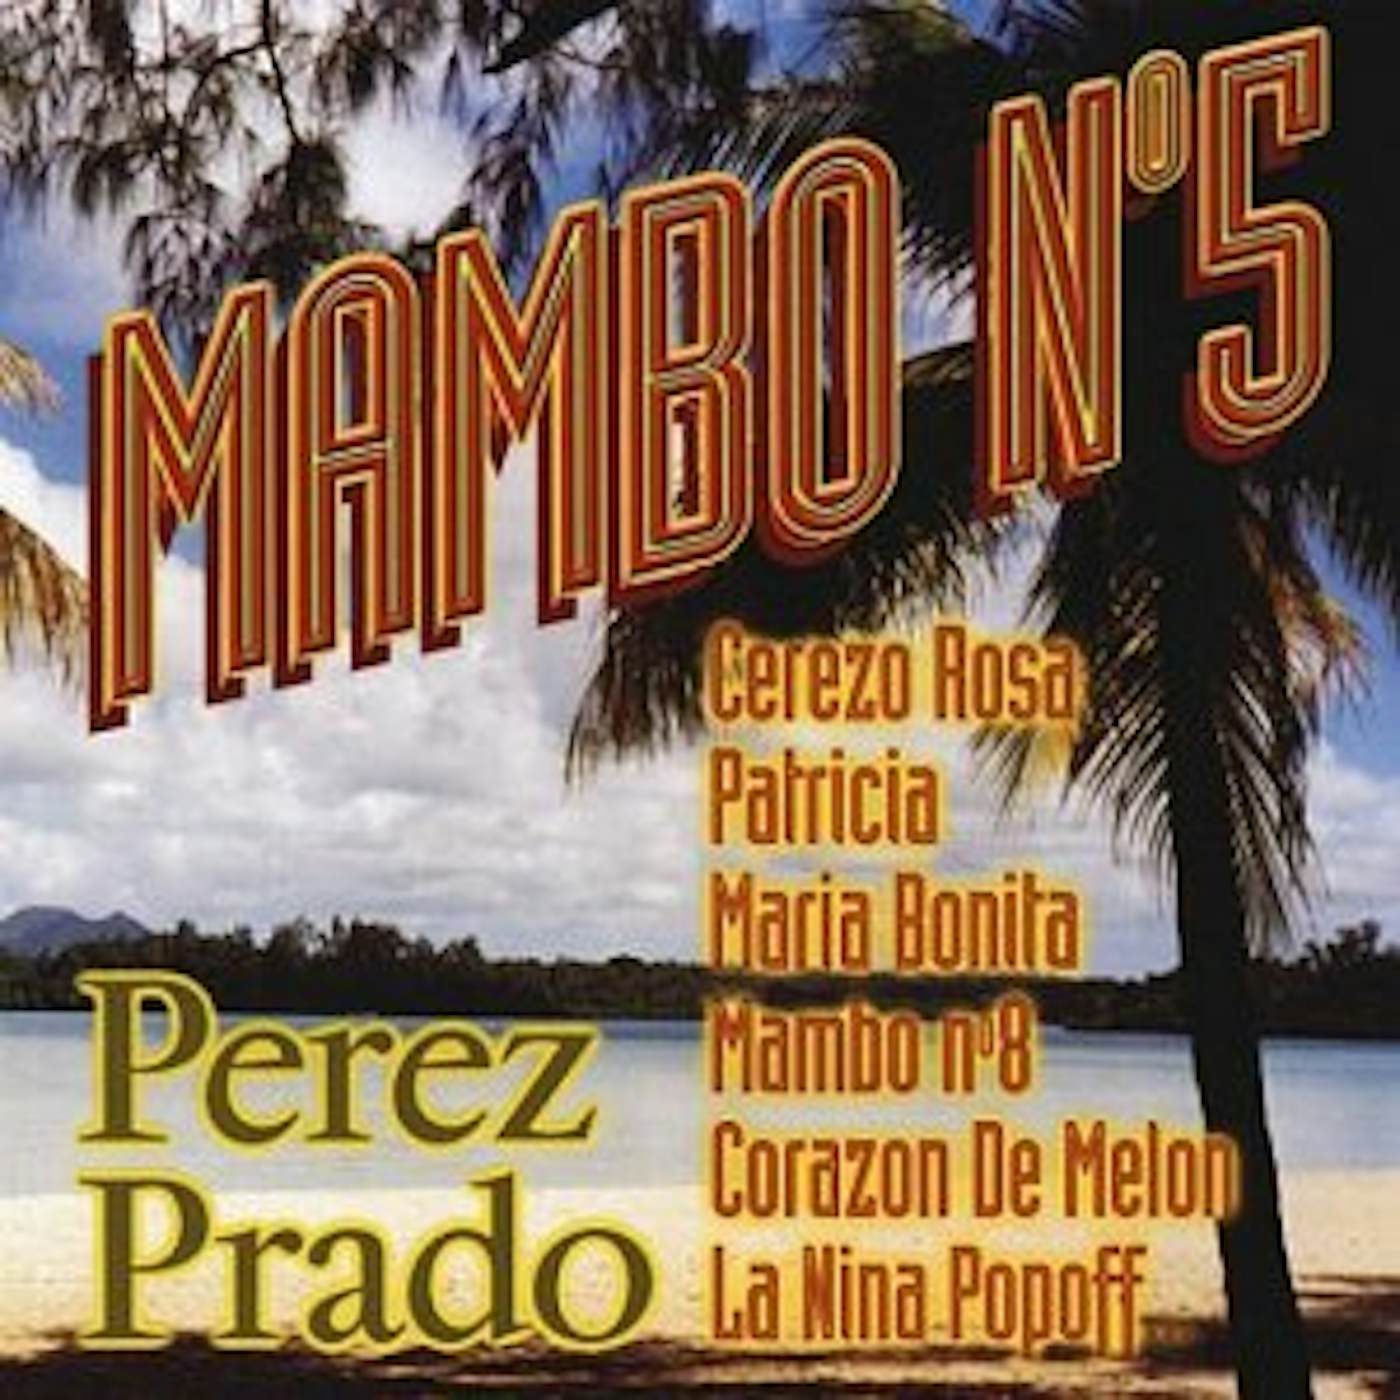 Pérez Prado MAMBO #5 CD